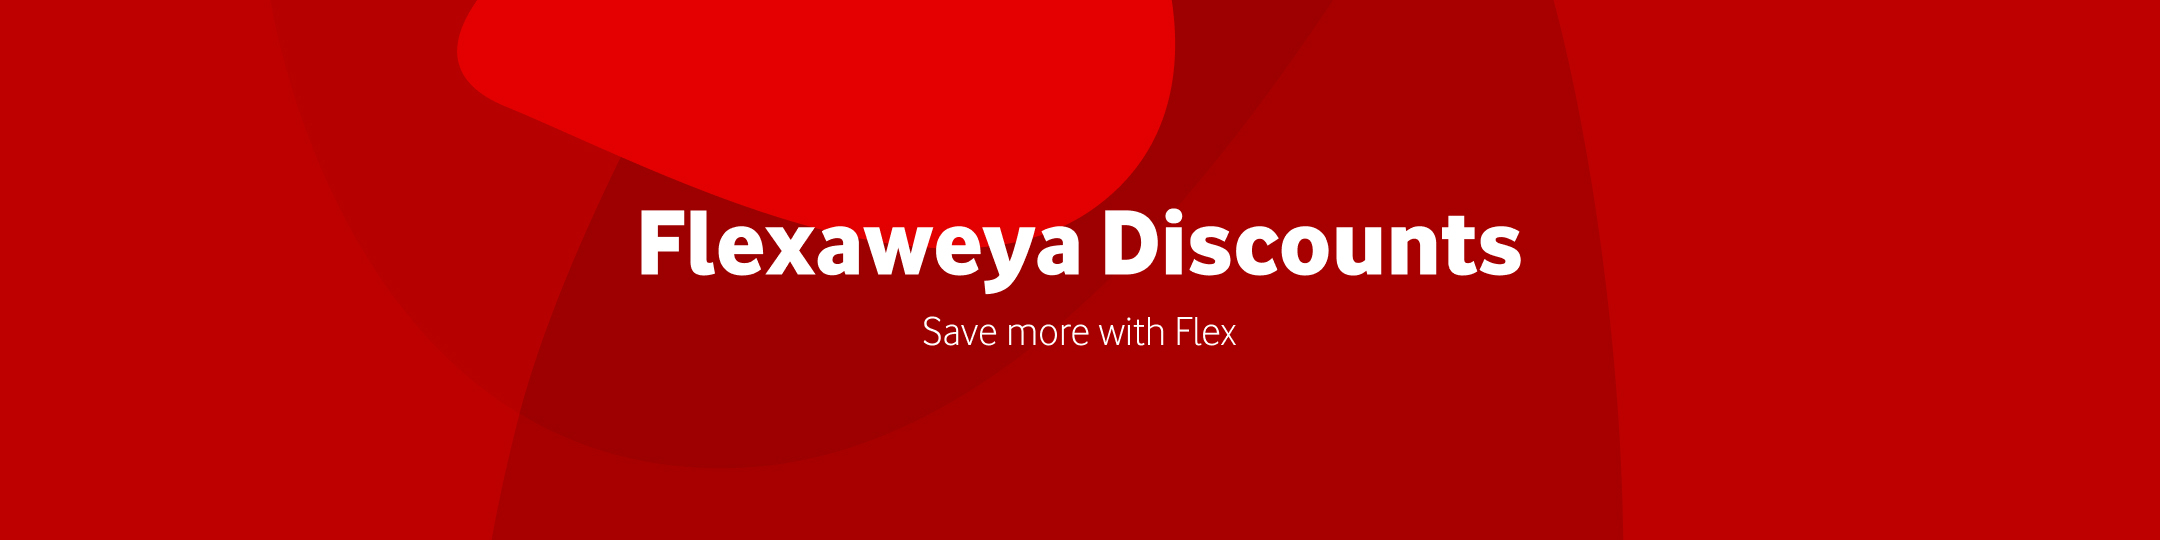 flexaweya-discounts